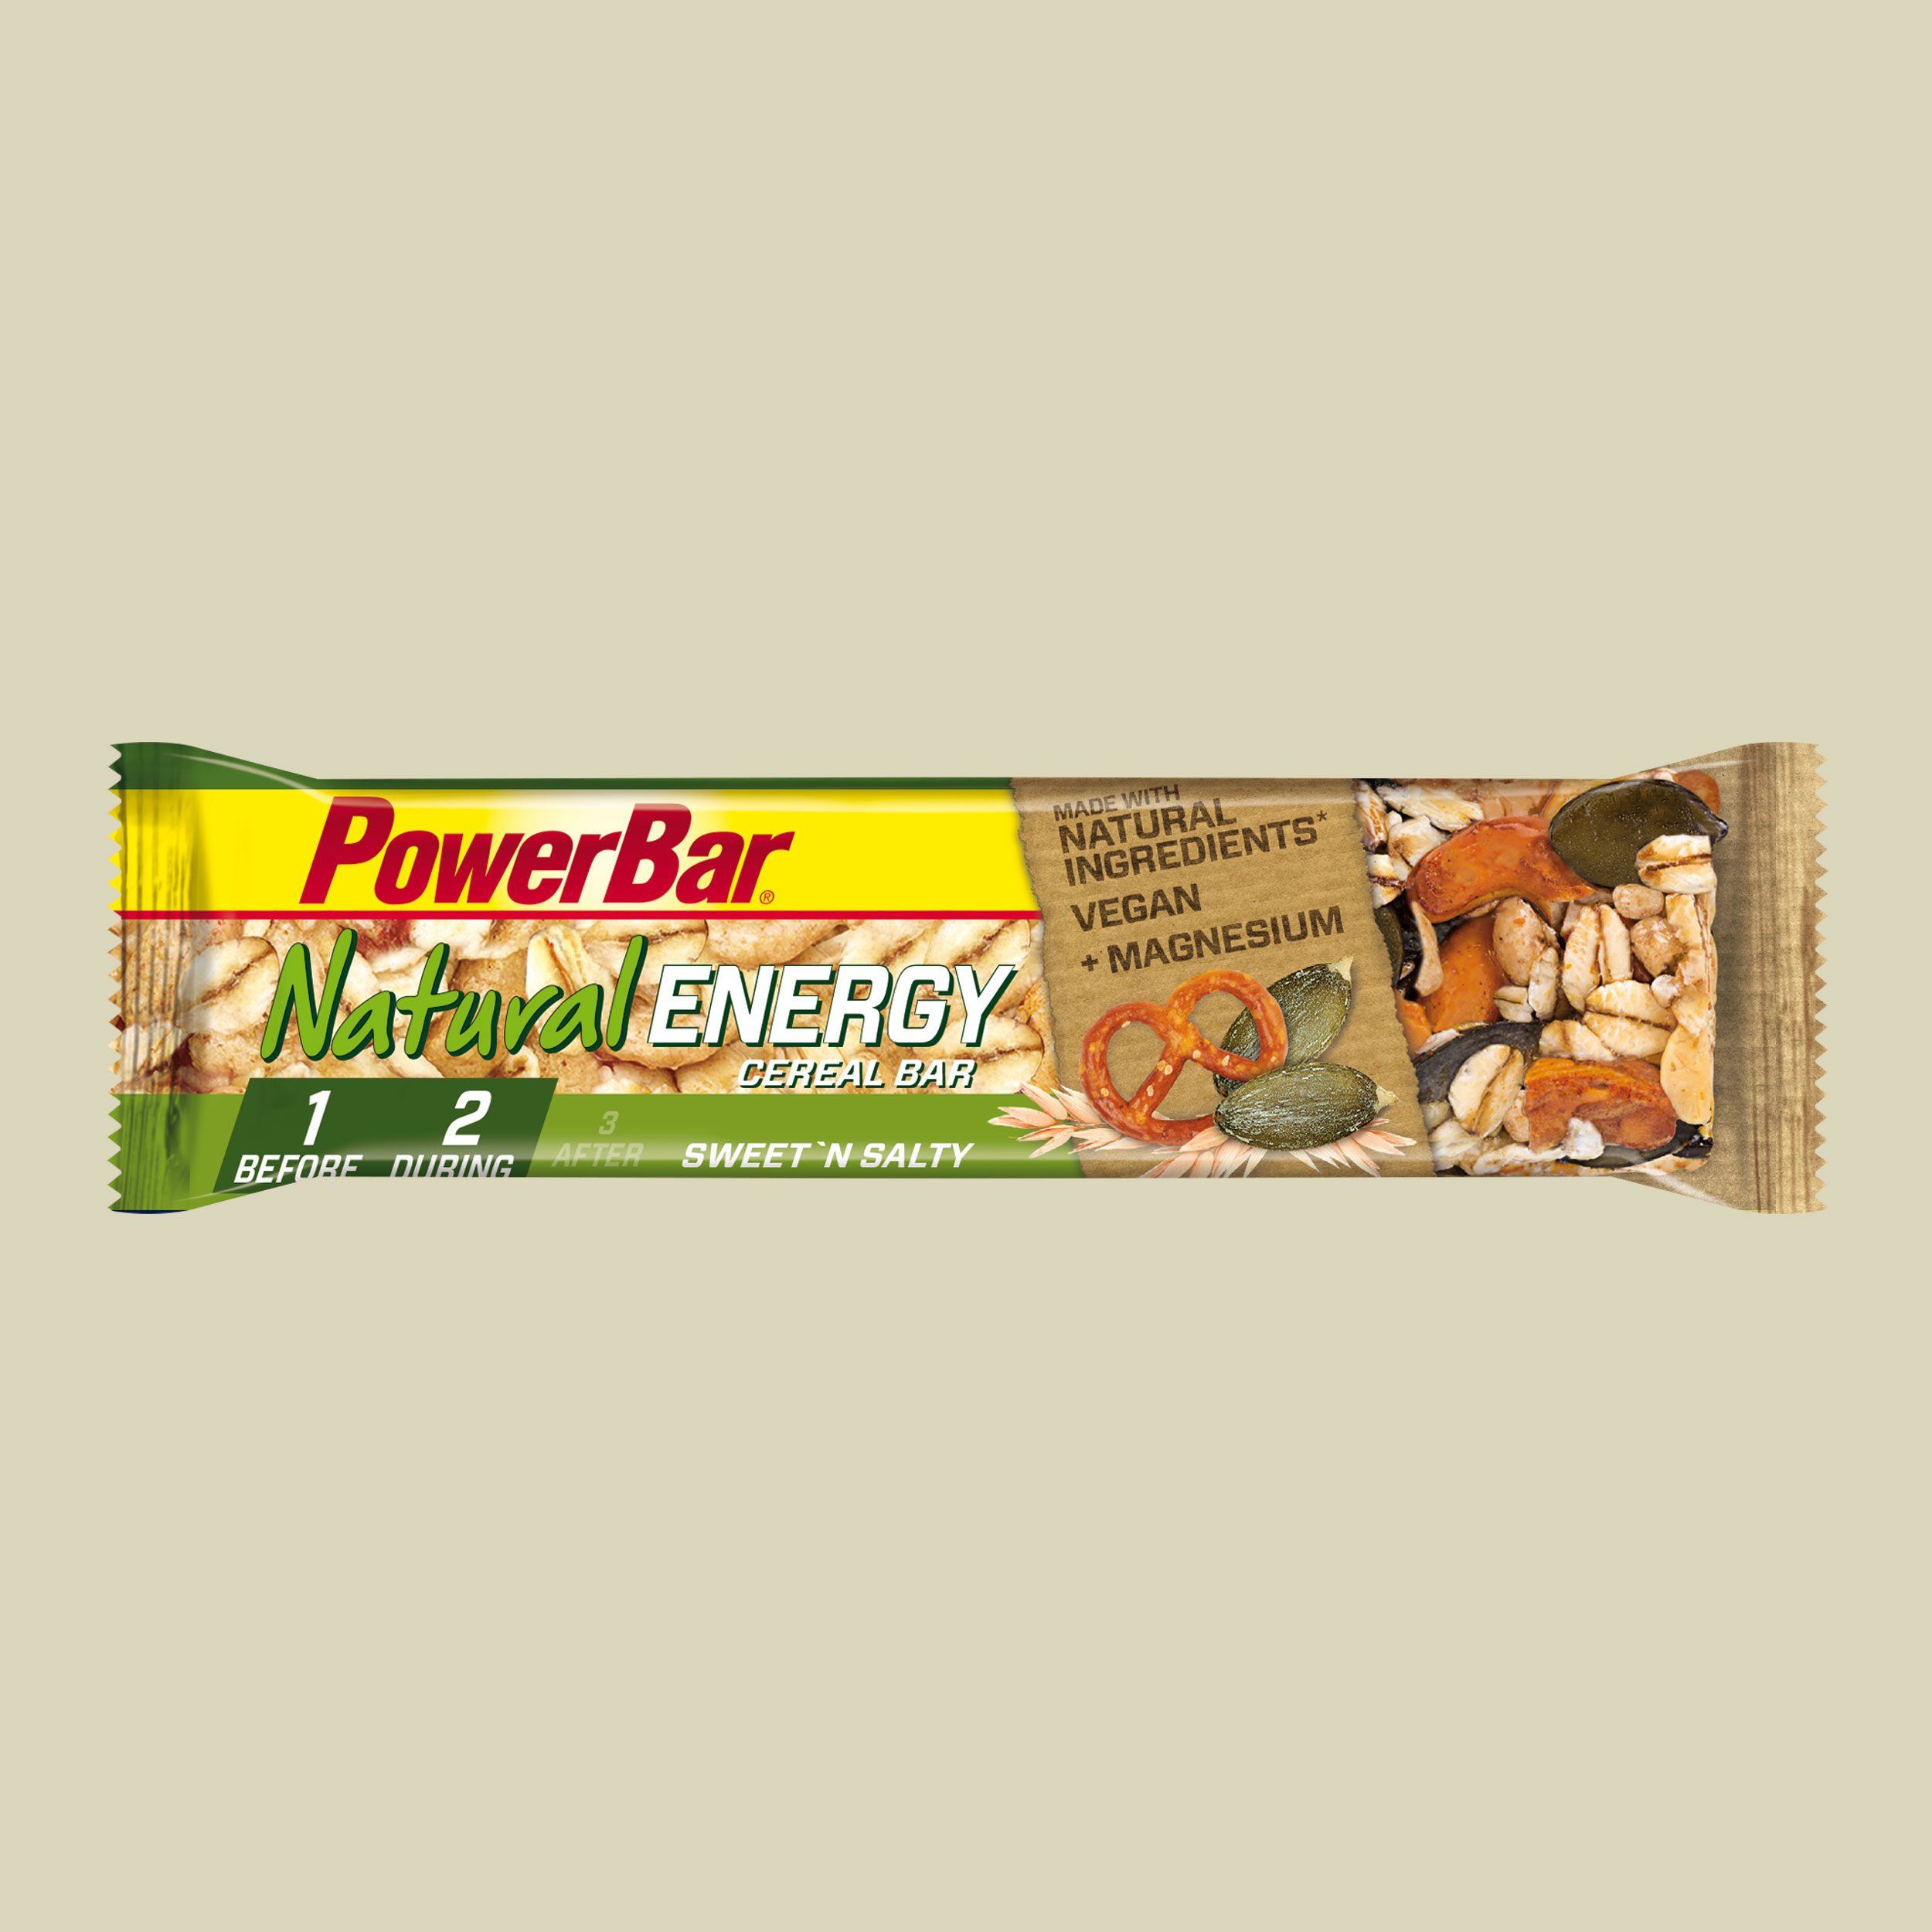 PowerBar Natural Energy Cereal Bar Geschmack sweet'n salty